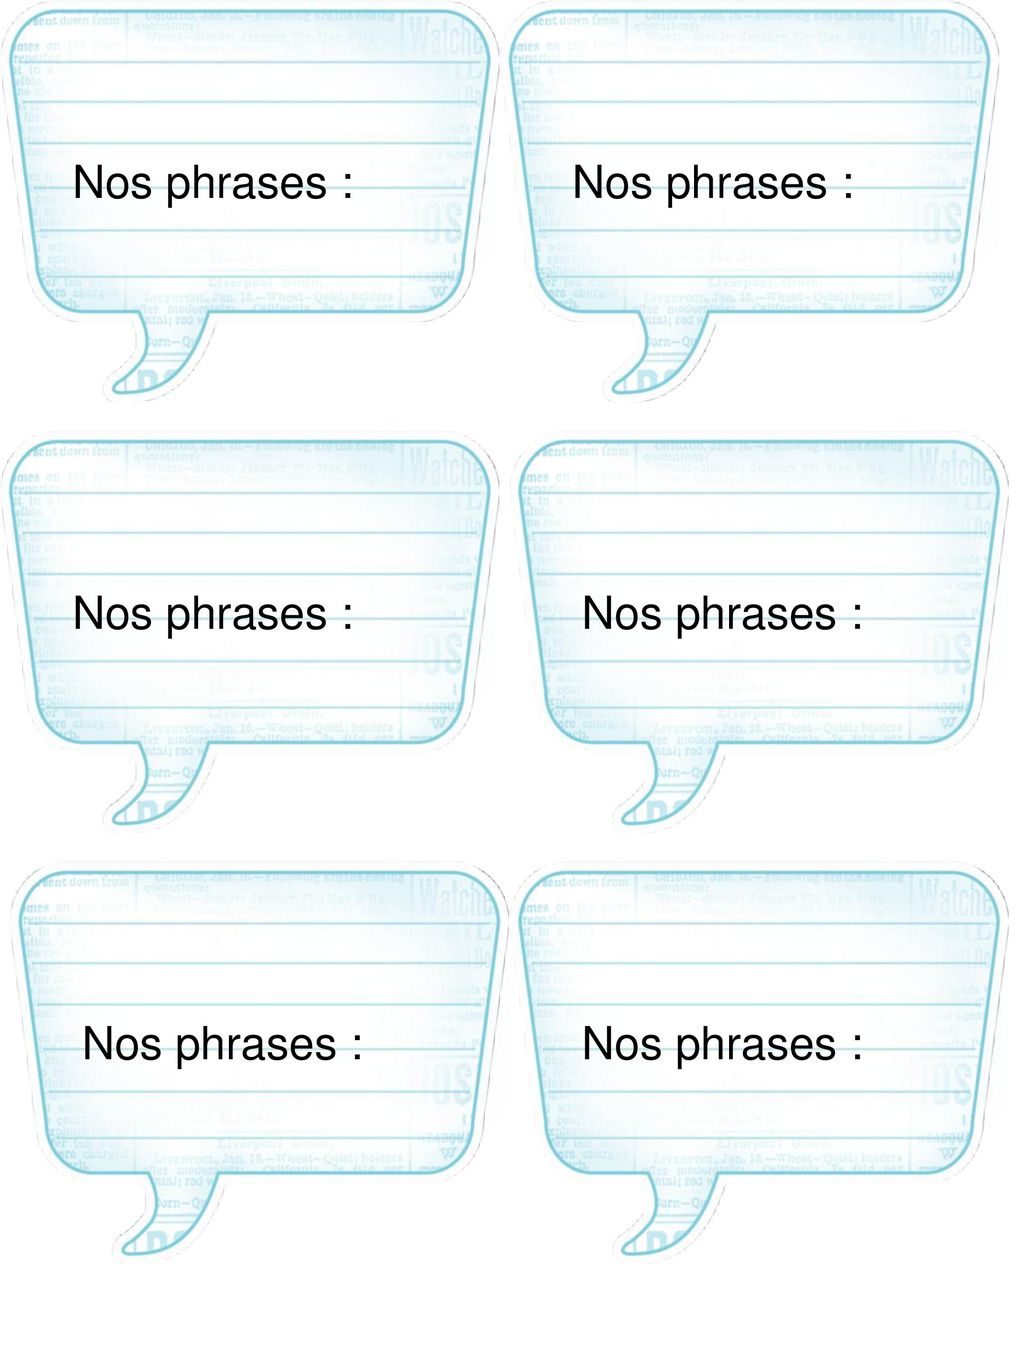 Nos phrases : Nos phrases : Nos phrases : Nos phrases : Nos phrases :